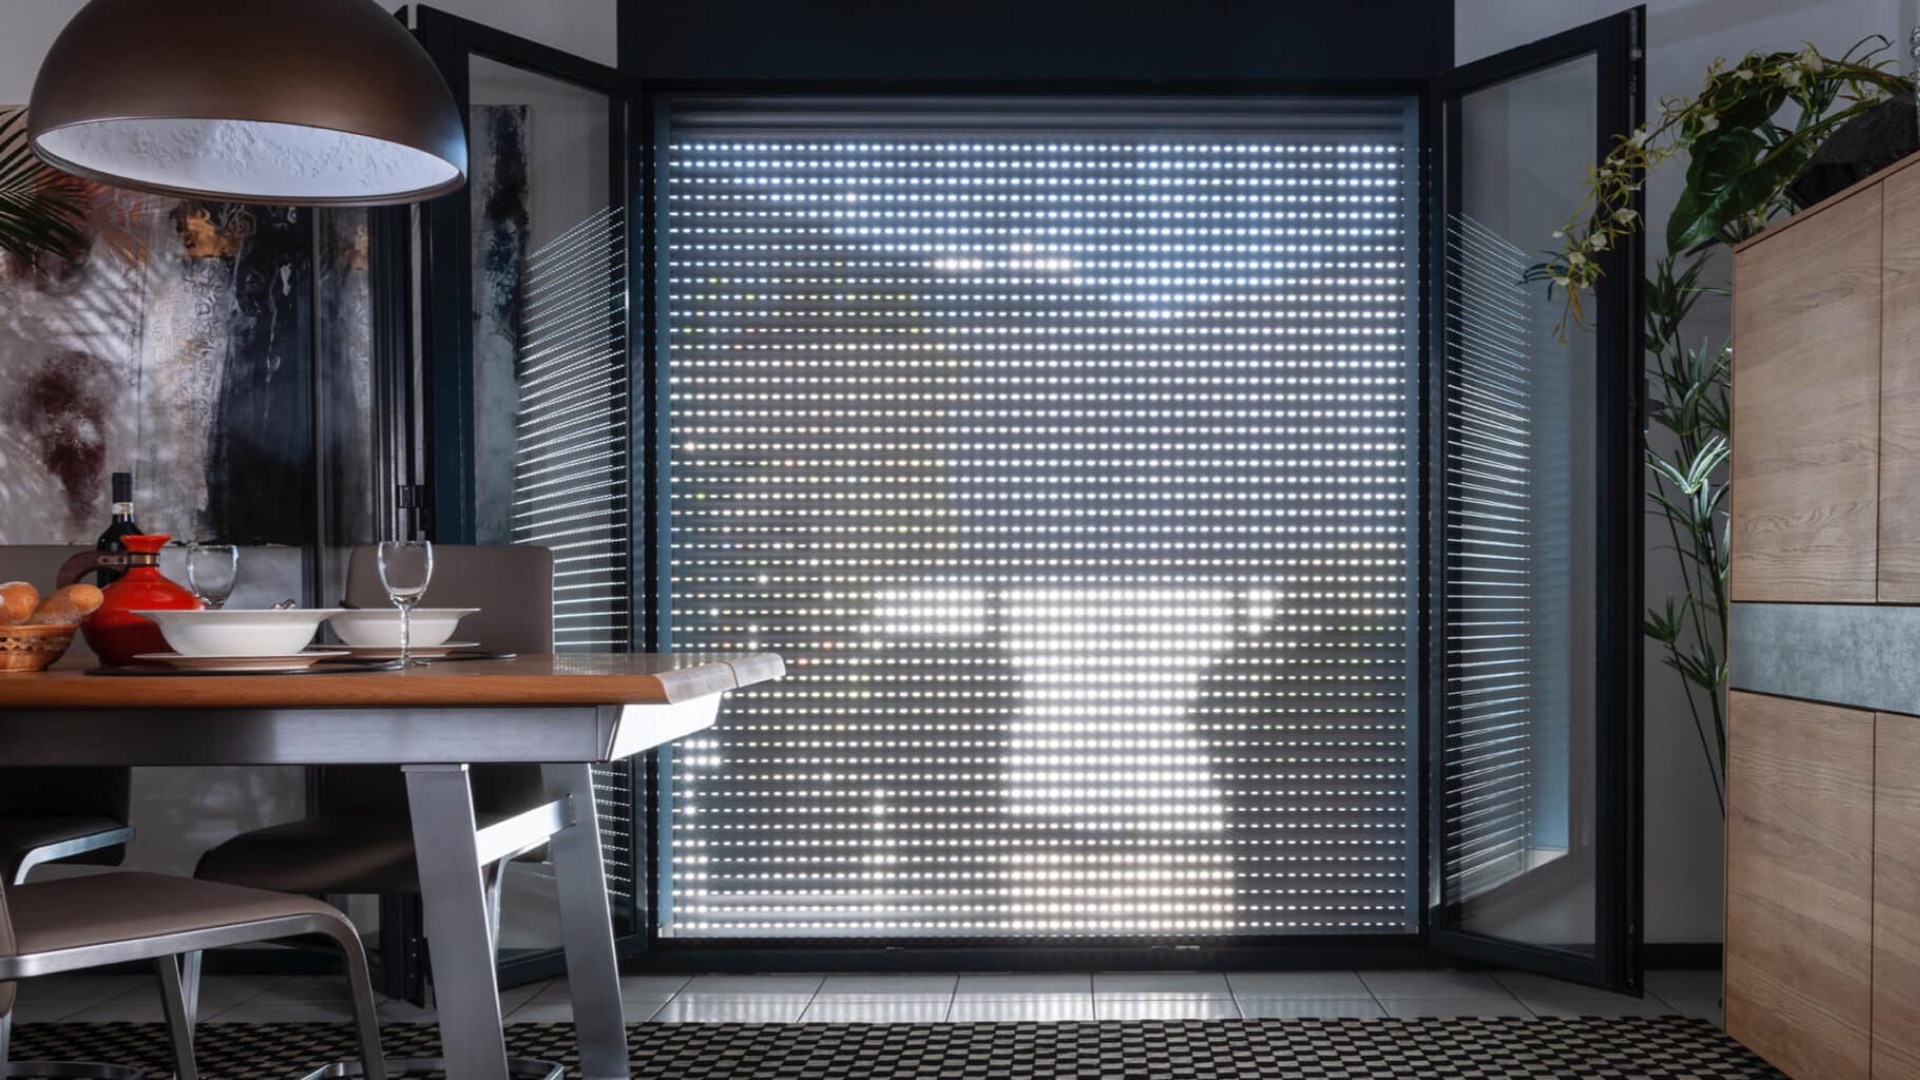 Vorbaurollläden, die effektiven Sonnen- und Sichtschutz bieten, eine praktische Lösung für Fenster und Fassaden.